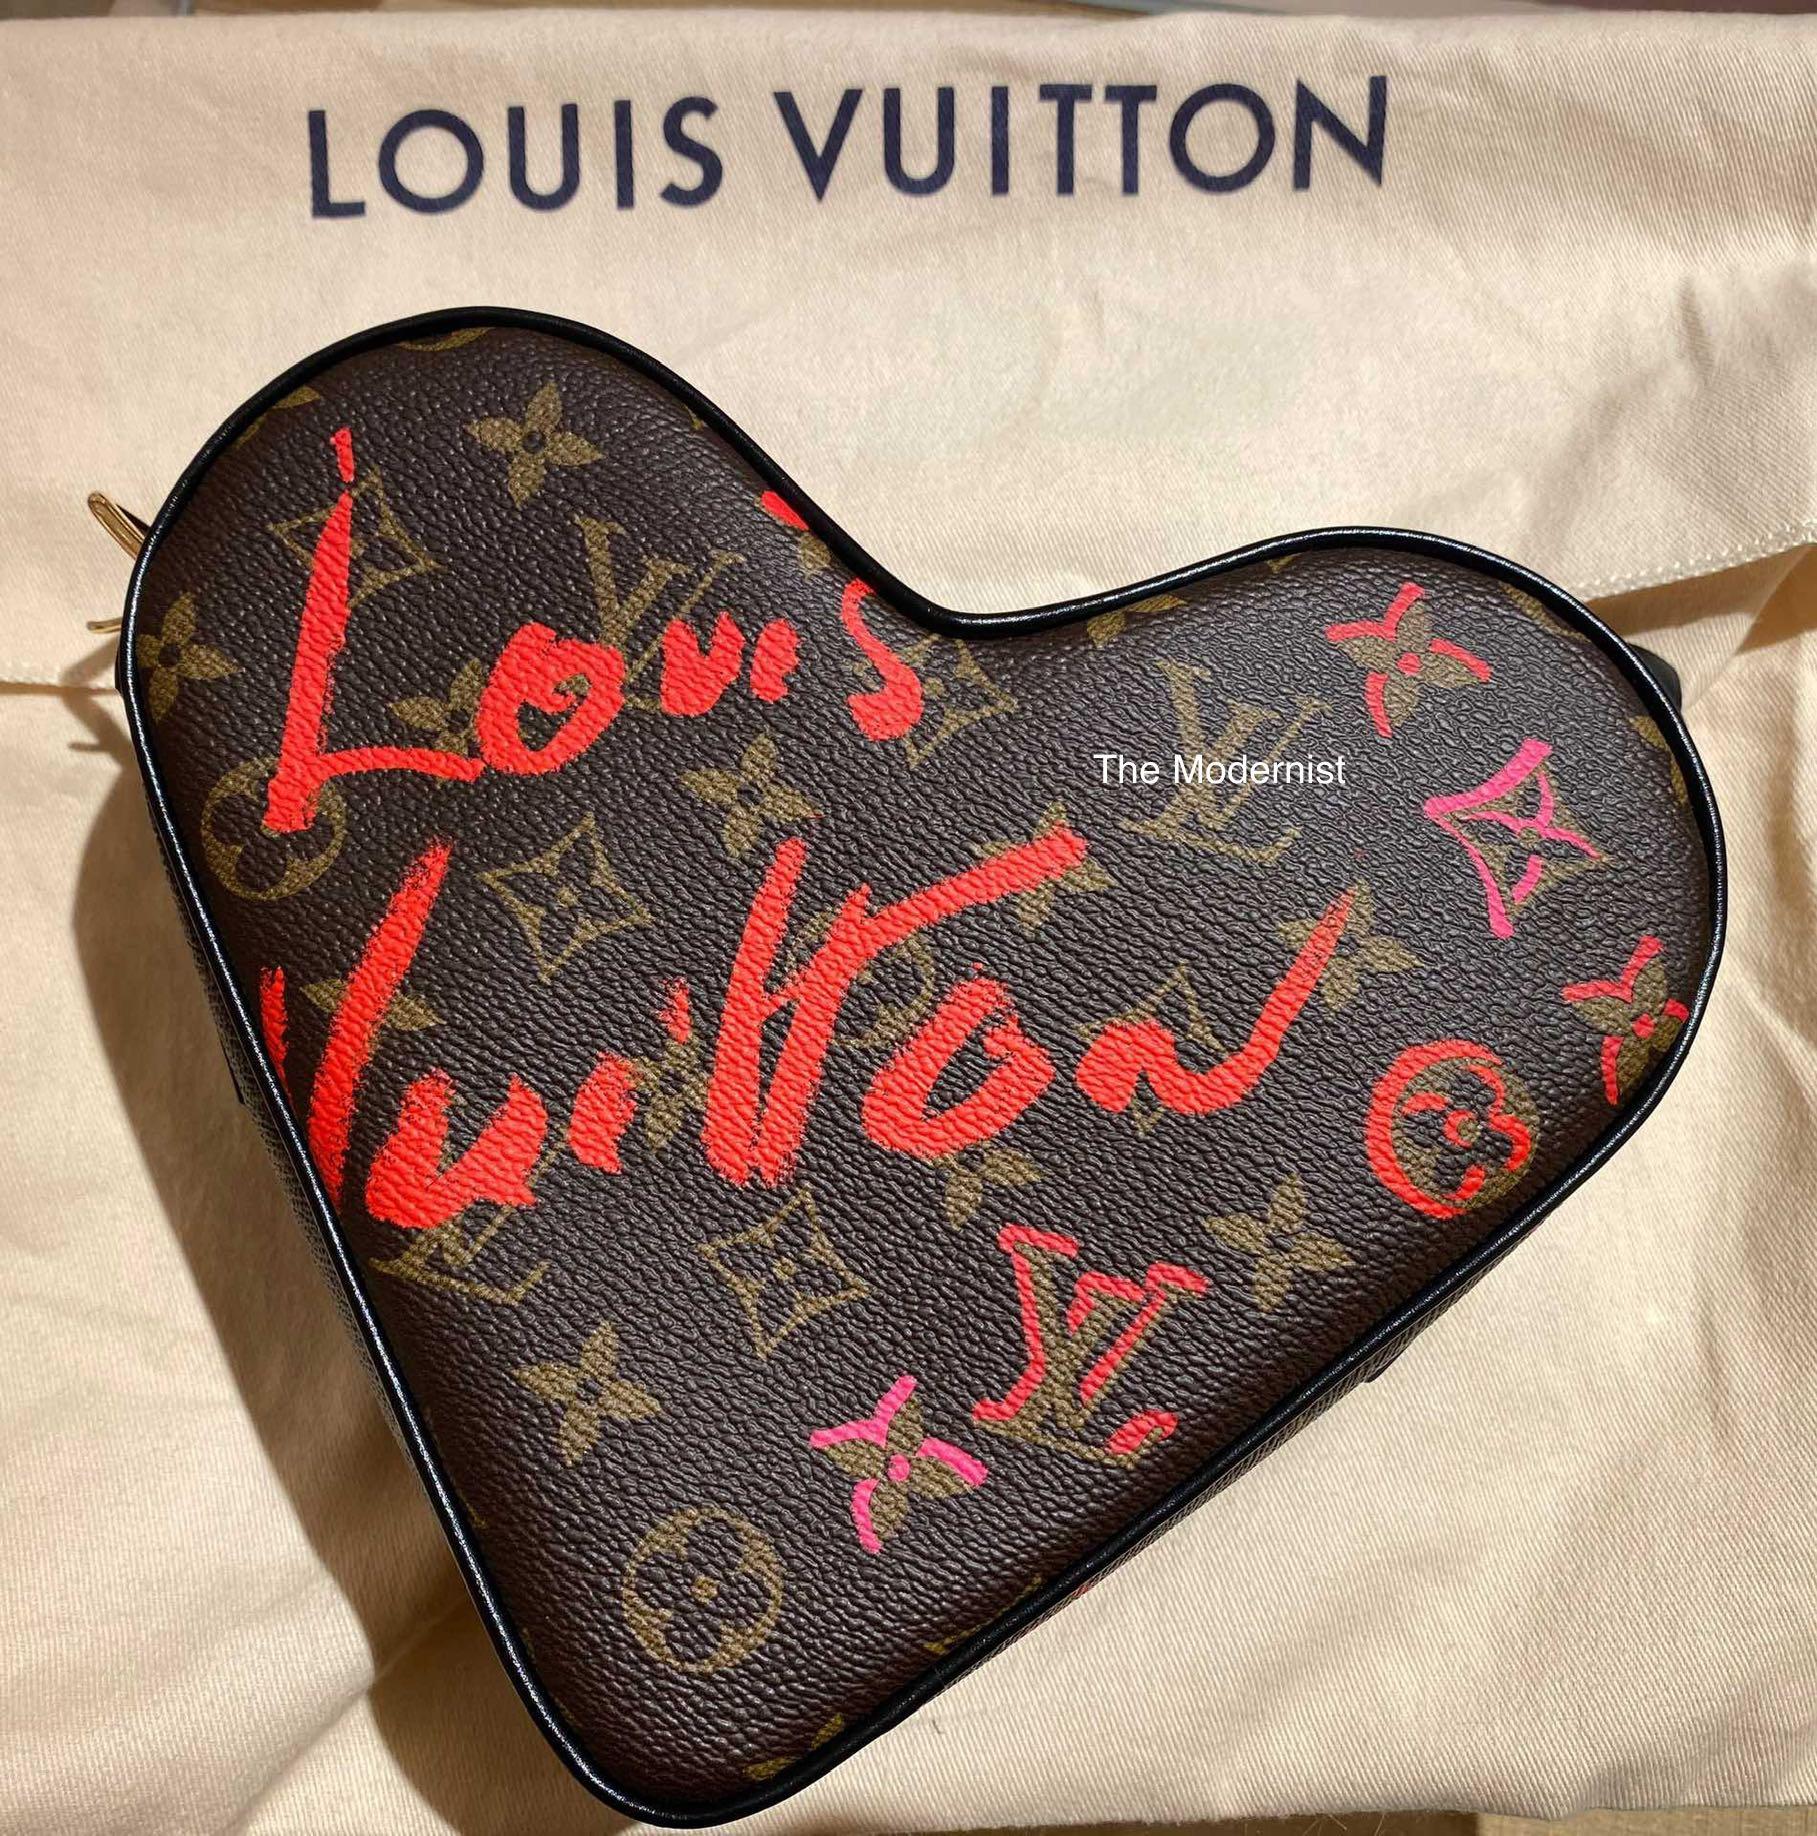 PurseBop Reveals the Louis Vuitton New HeartShaped Monogram Bag